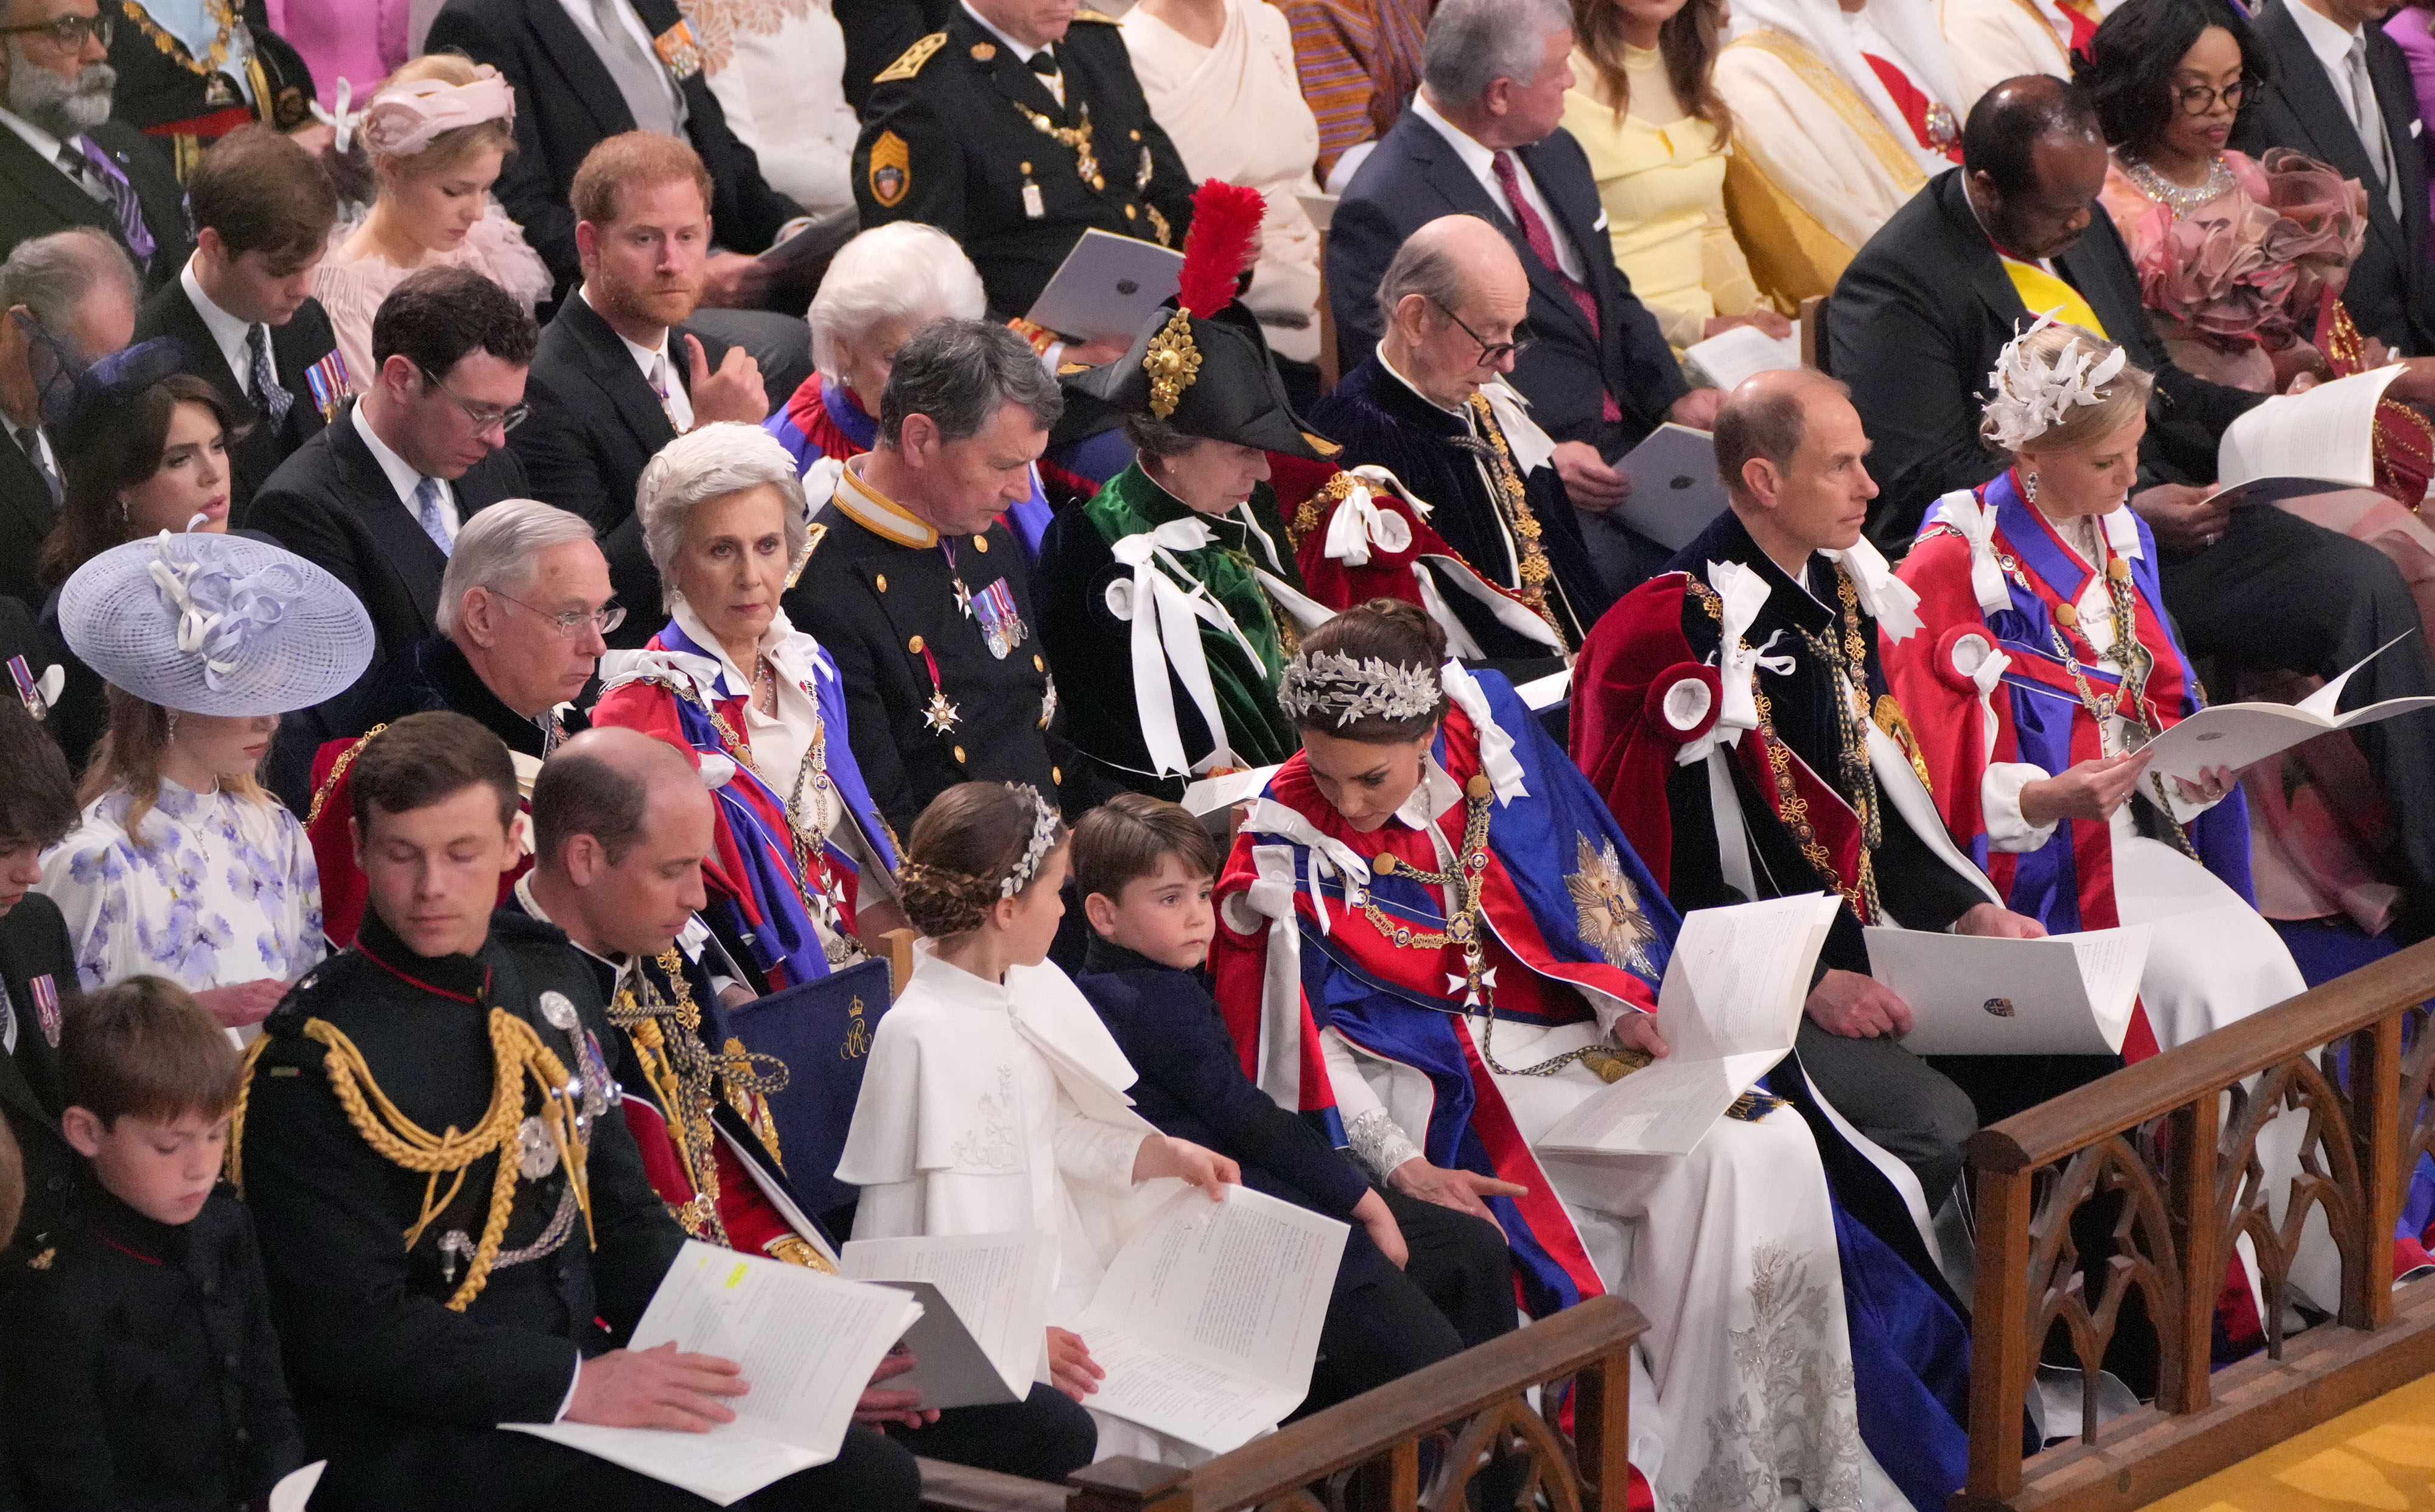 Le prince Harry est assis au troisième rang lors de la cérémonie de couronnement du roi Charles III et de la reine Camilla à l'abbaye de Westminster, le 6 mai 2023 à Londres, en Angleterre. | Source : Getty Images